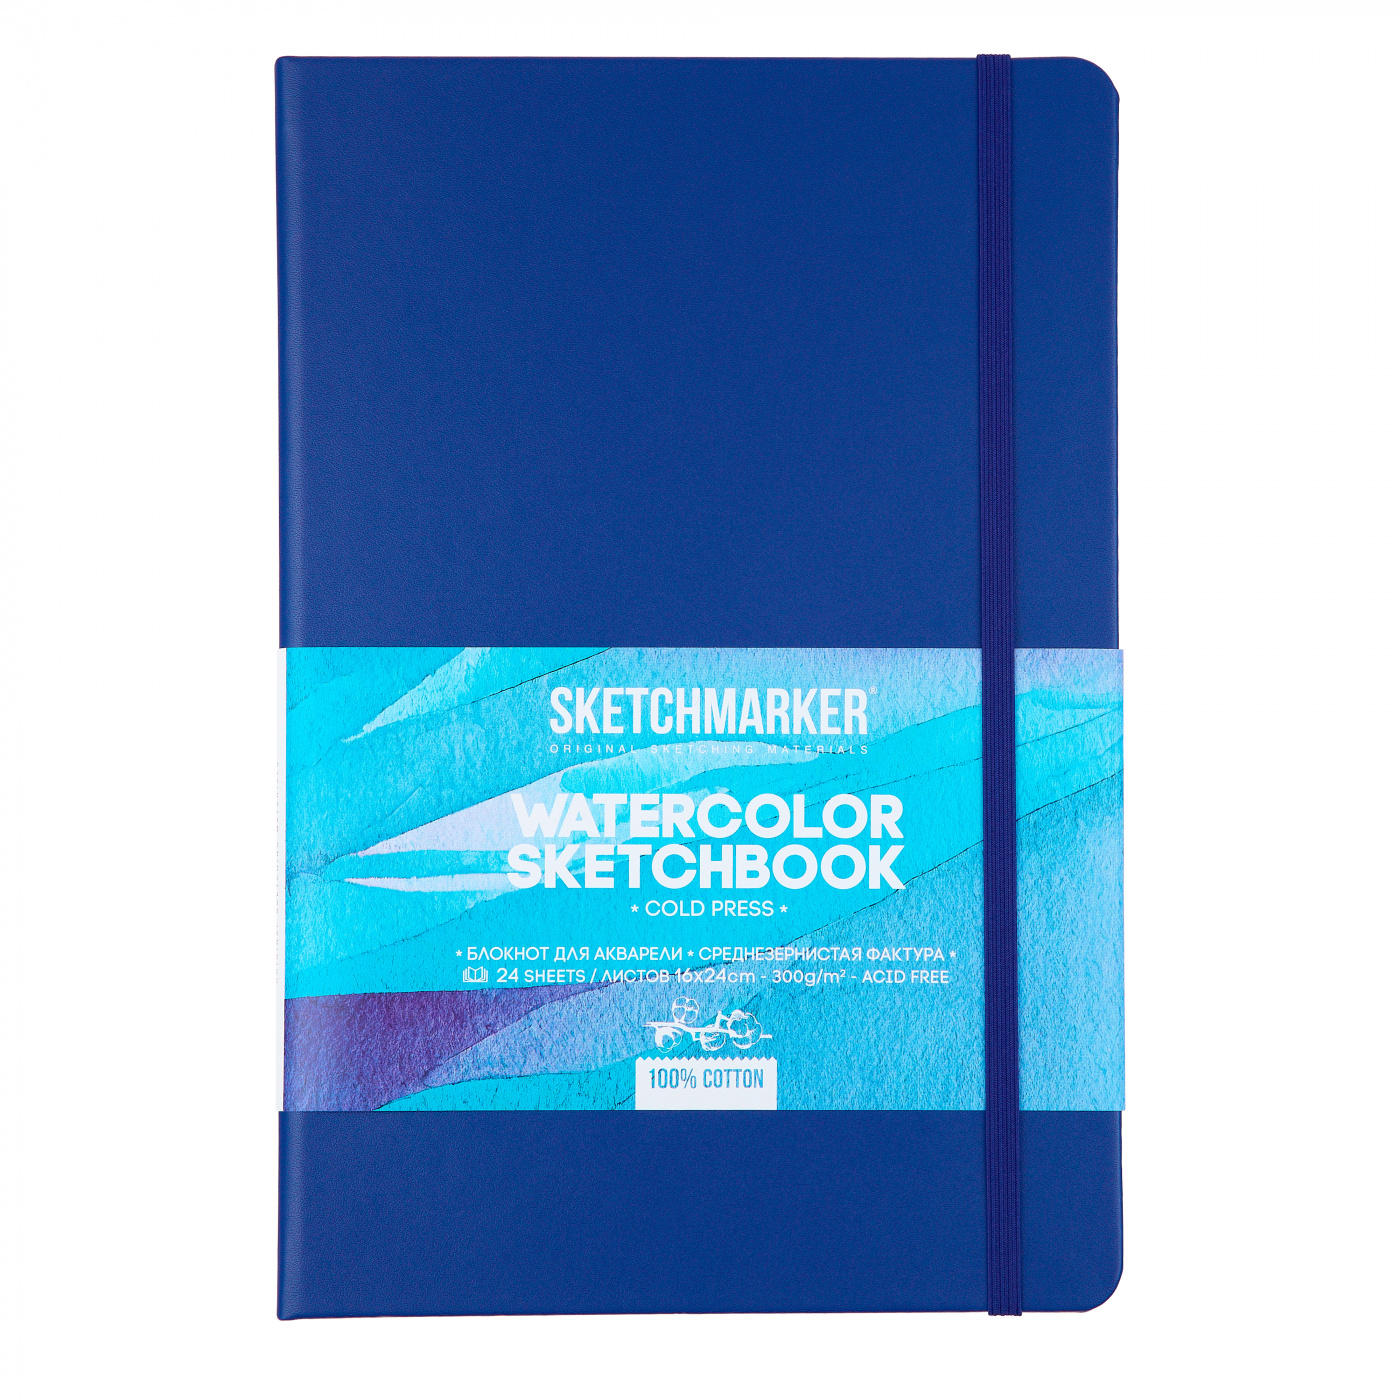 Скетчбук для акварели Sketchmarker 16 х 24 см 24 л 300 г, хлопок, среднезернистая теория государства и права учебник для средних специальных учебных заведений